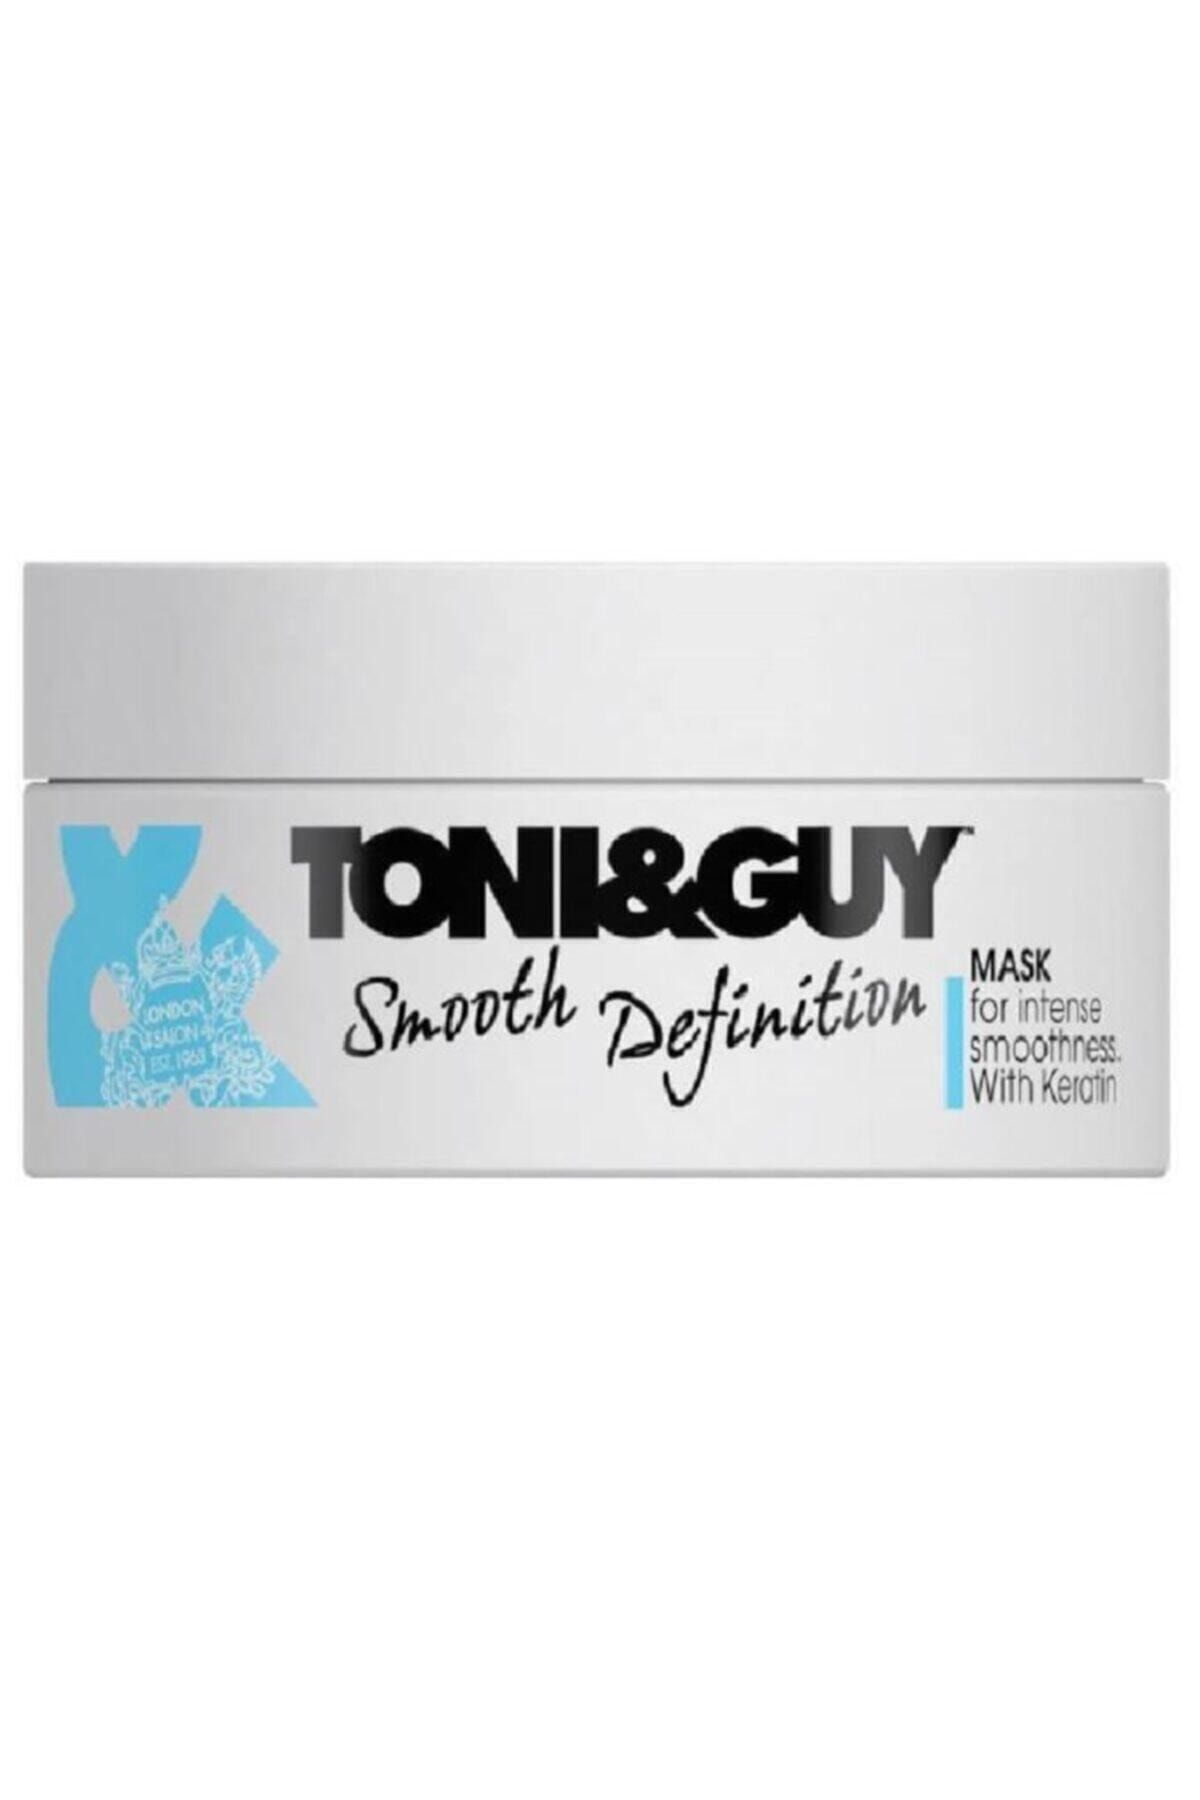 Toni Guy Smooth Definition Mask-kuru Saçlar Için Bakım Maskesi 200 ml